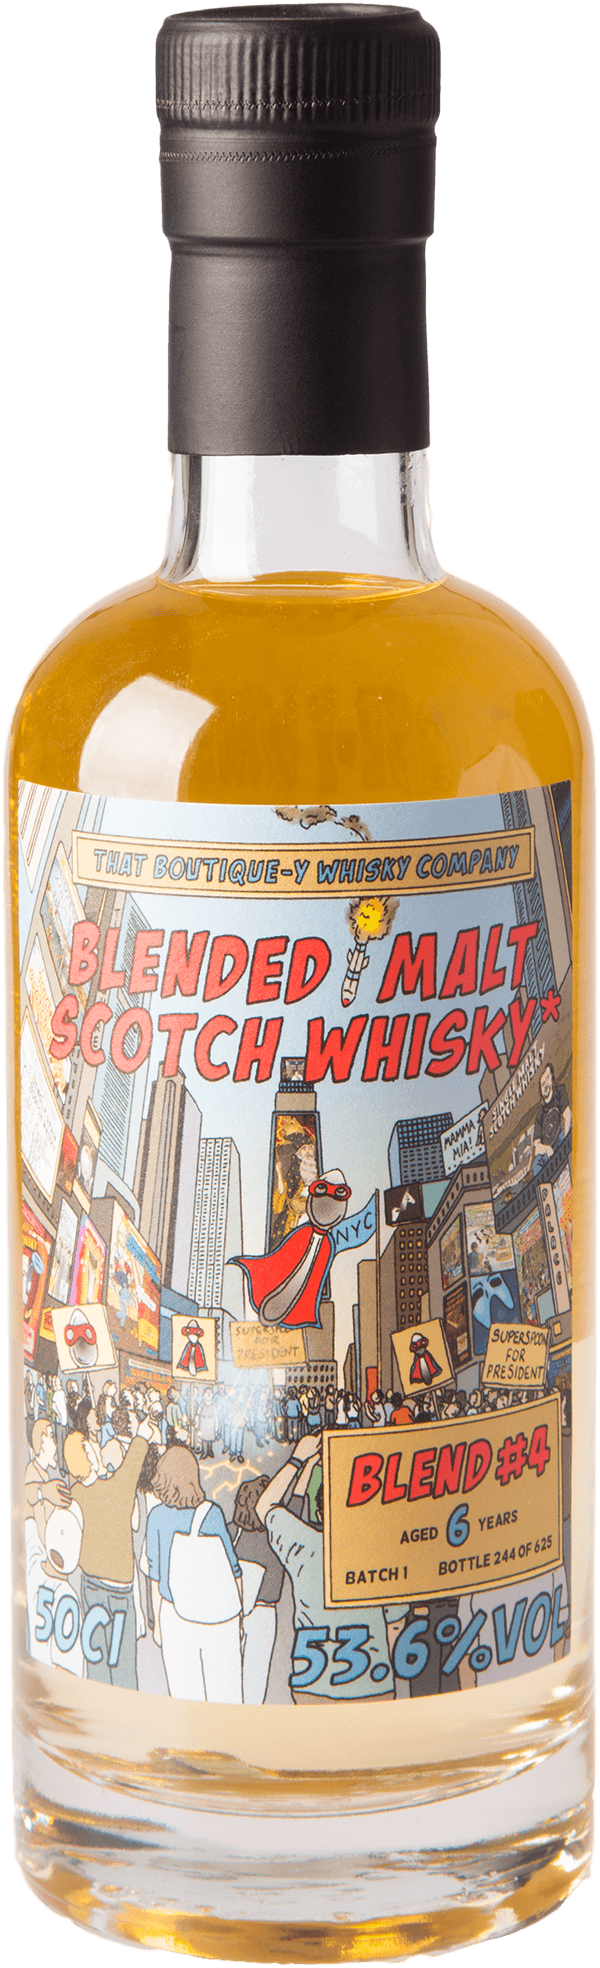 Blended Malt Whisky #4 Batch 1 (That Boutique-y) 53,6% 0,5L